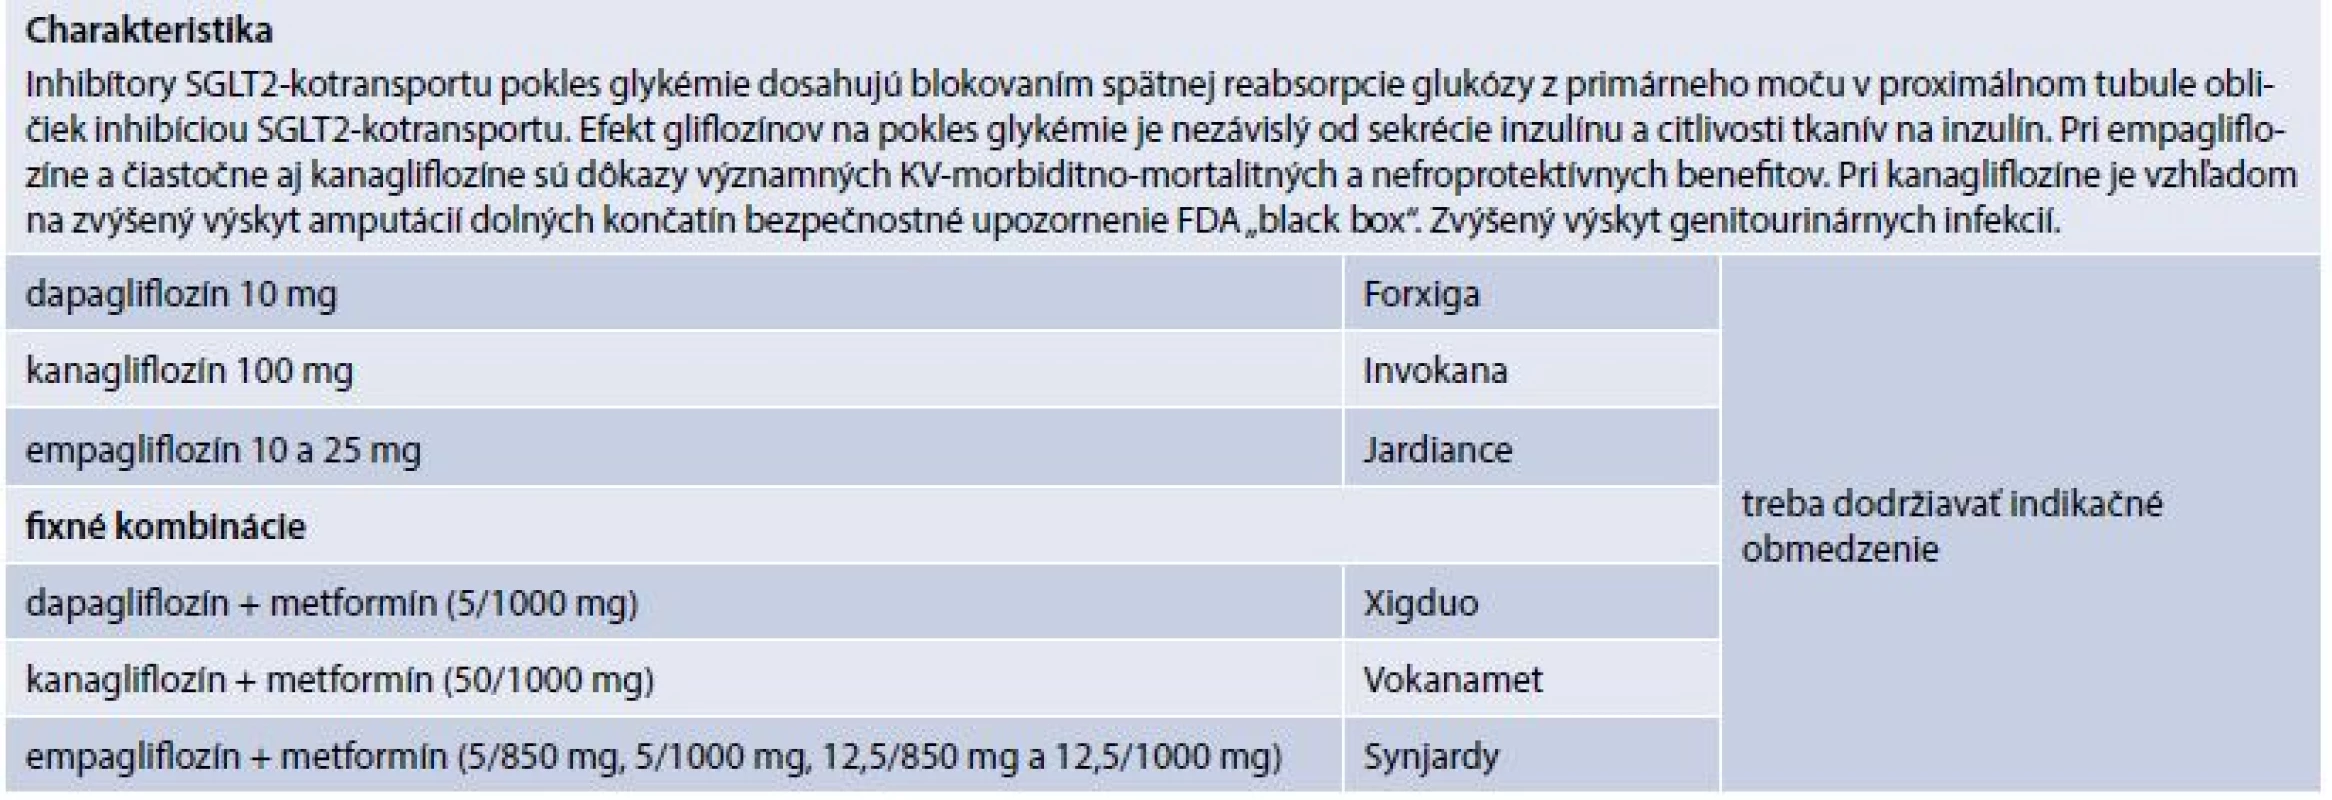 Charakteristika Inhibítory SGLT2-kotransportu (prípravky kategorizované na Slovensku)